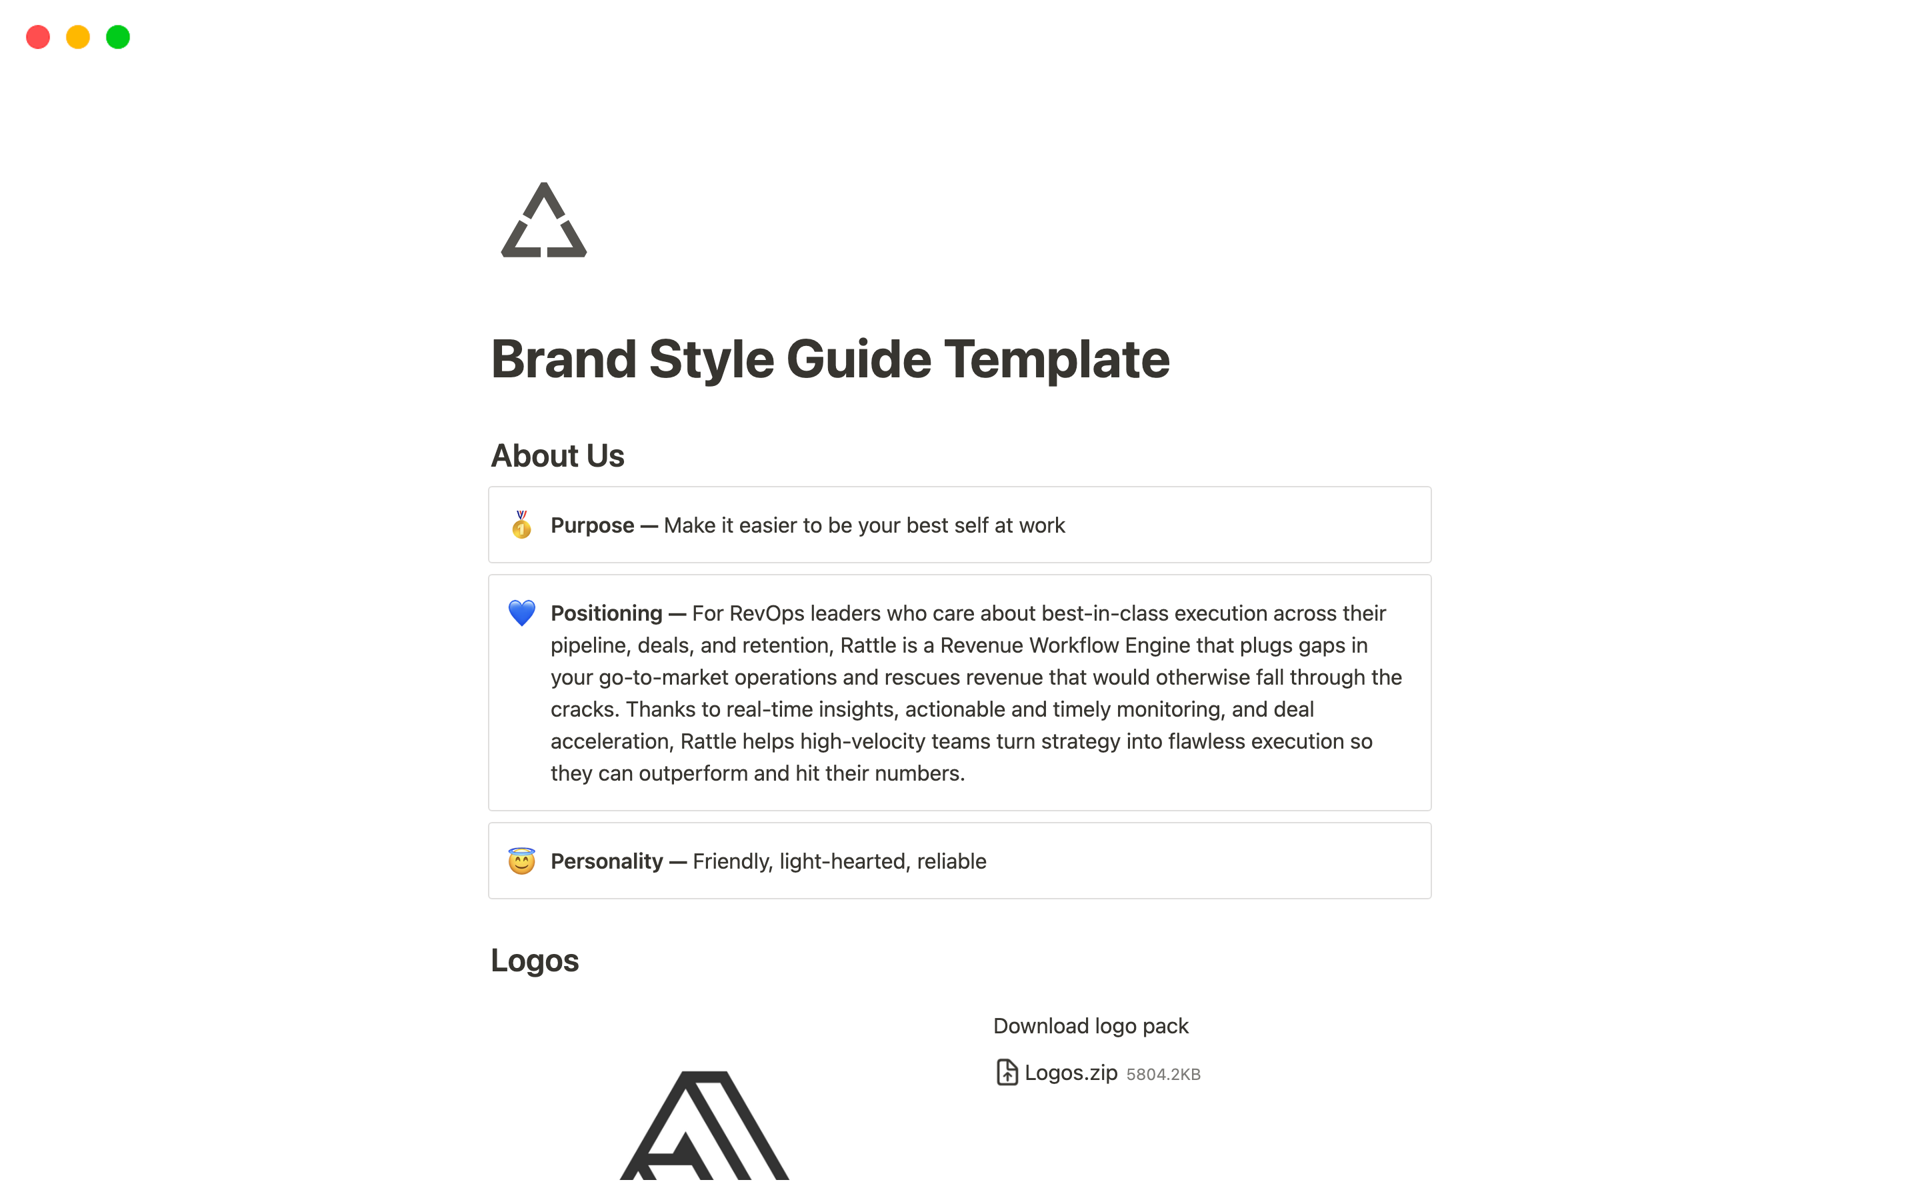 Vista previa de plantilla para Brand Style Guide